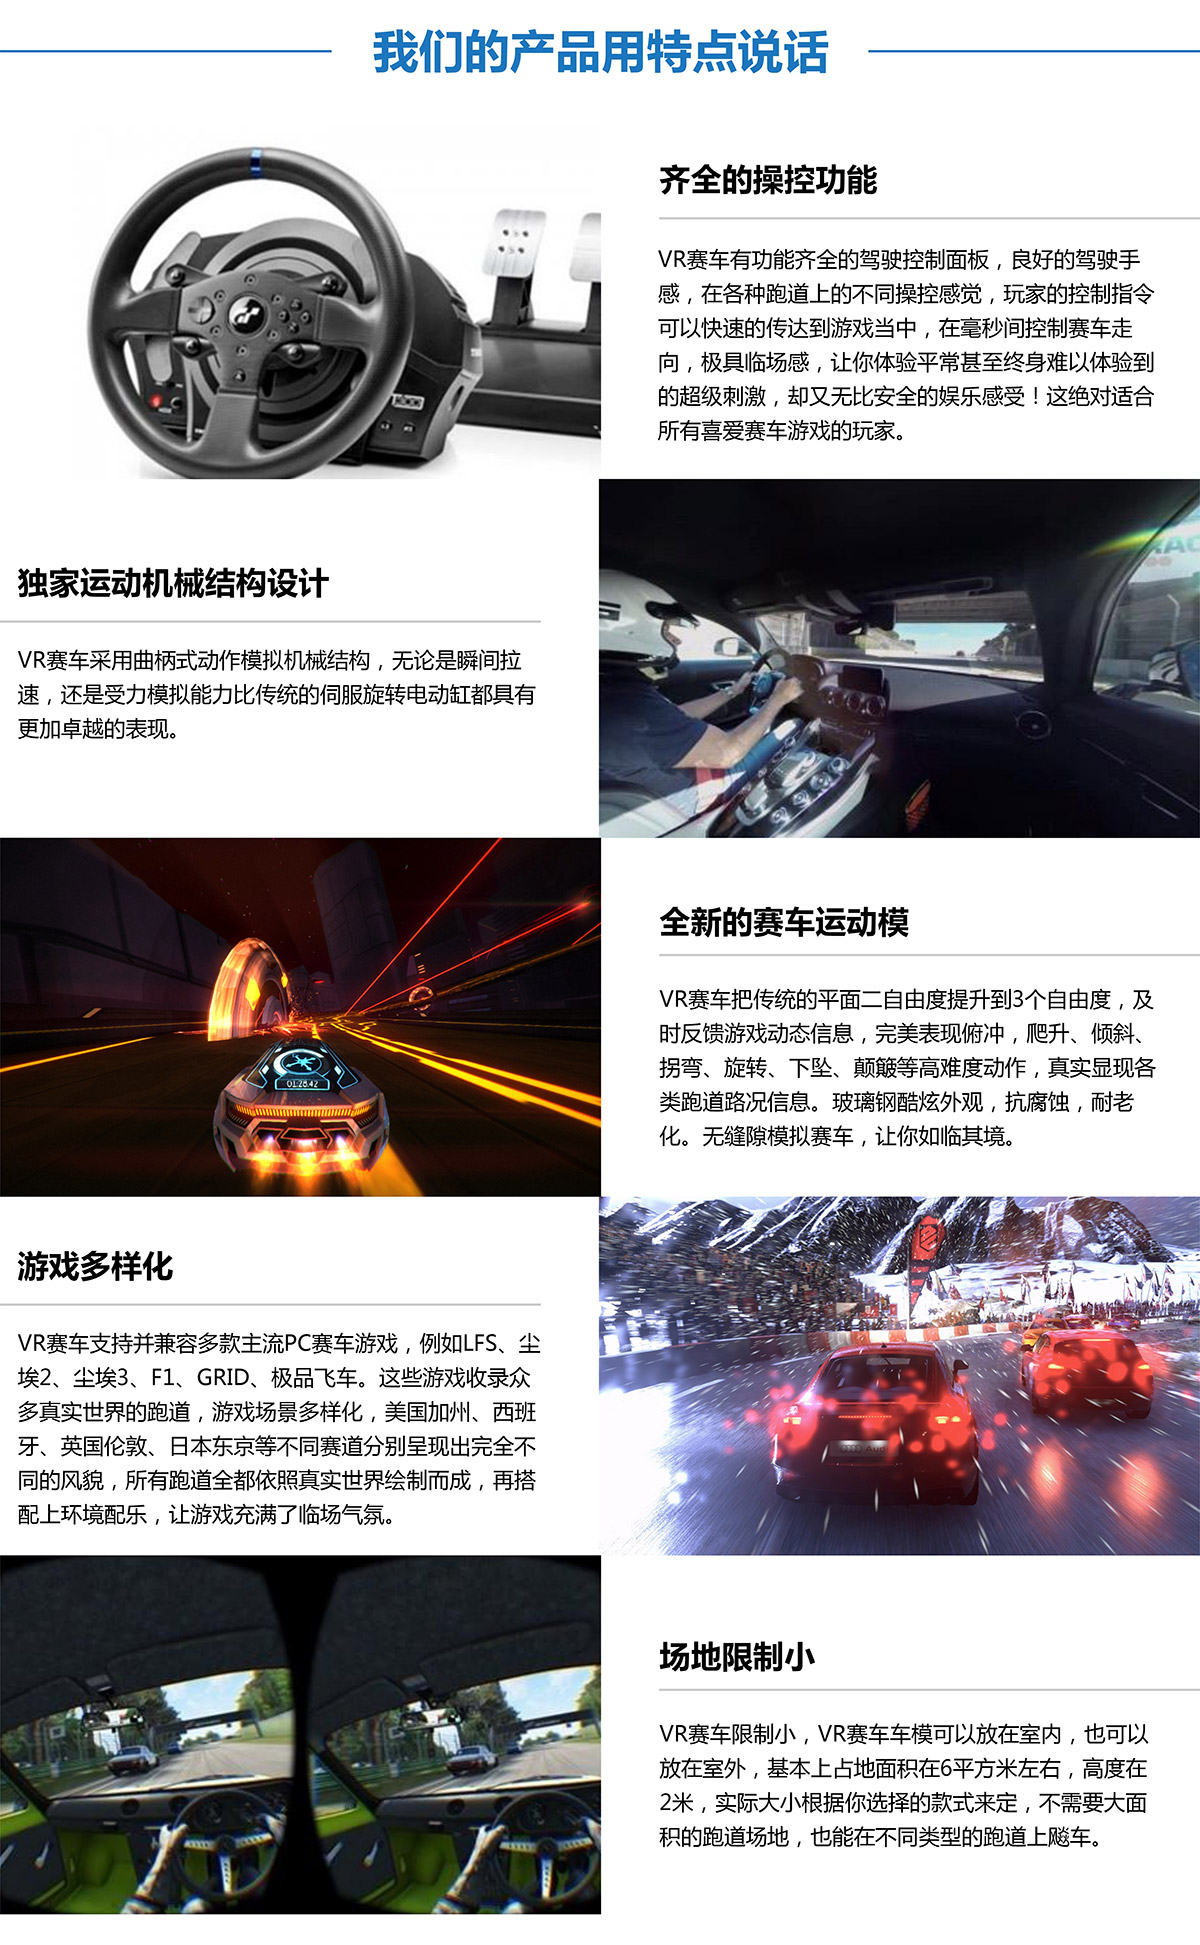 虚拟VR赛车产品用特点说话.jpg